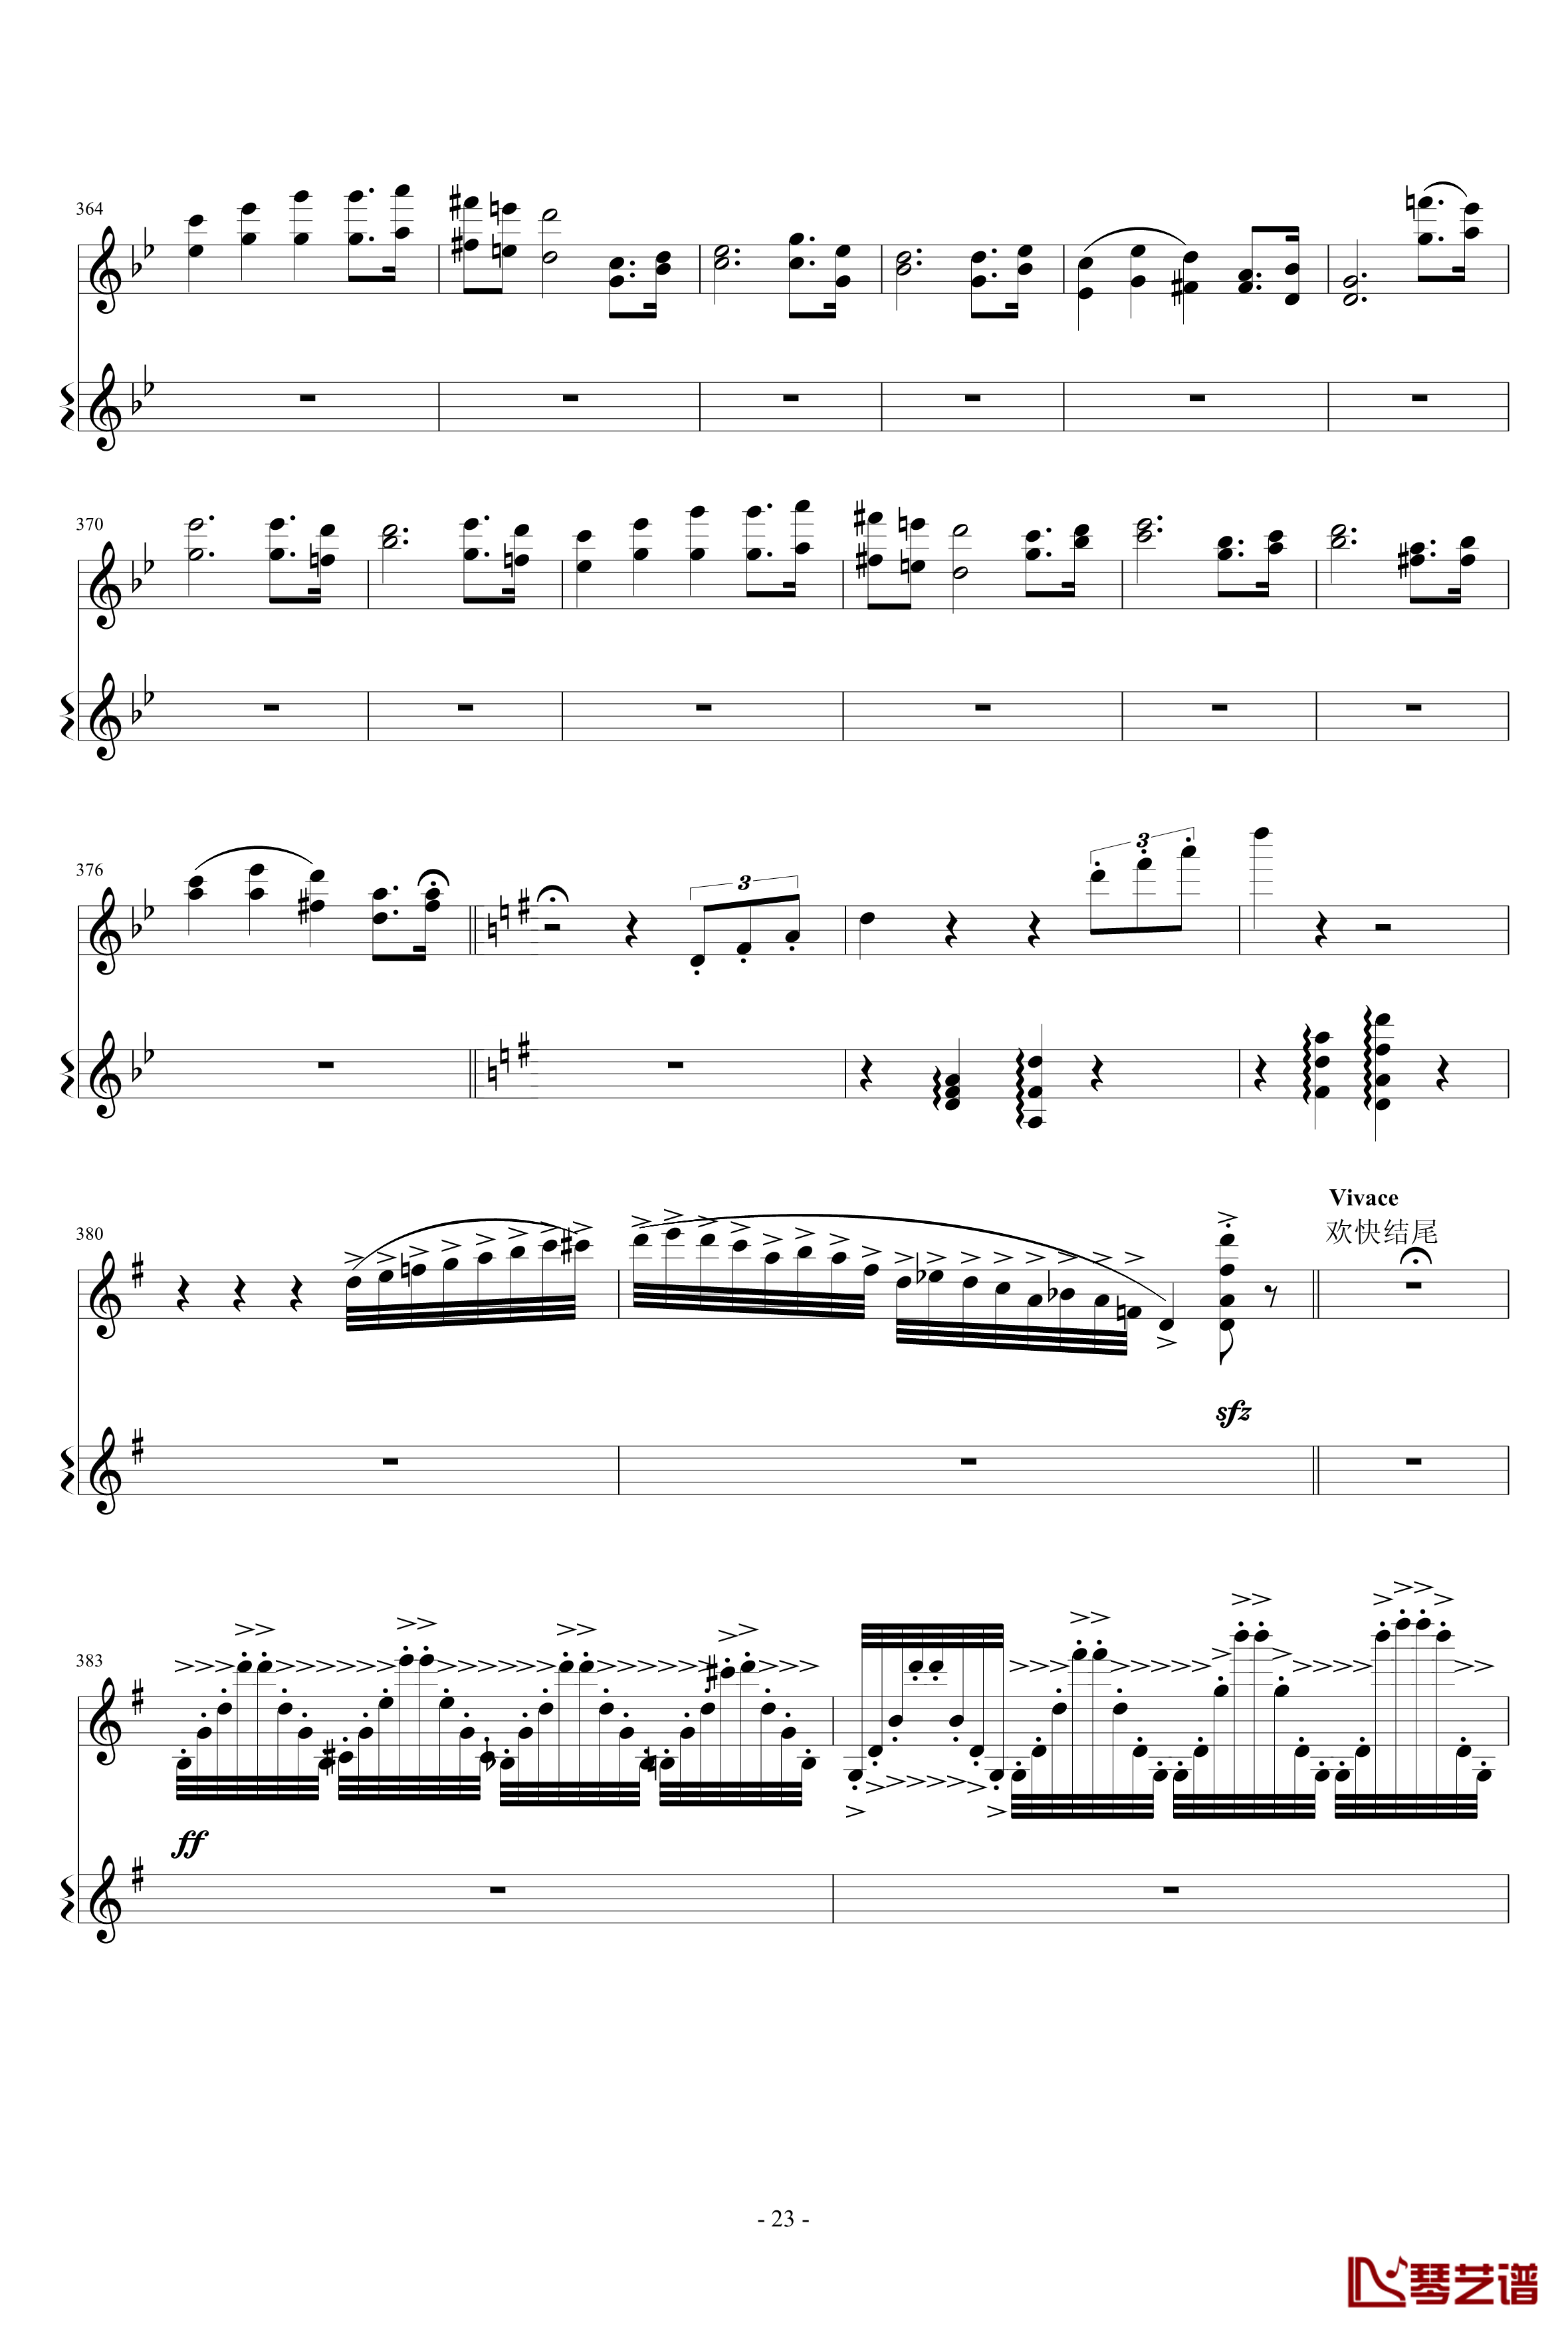 意大利国歌变奏曲钢琴谱-只修改了一个音-DXF23